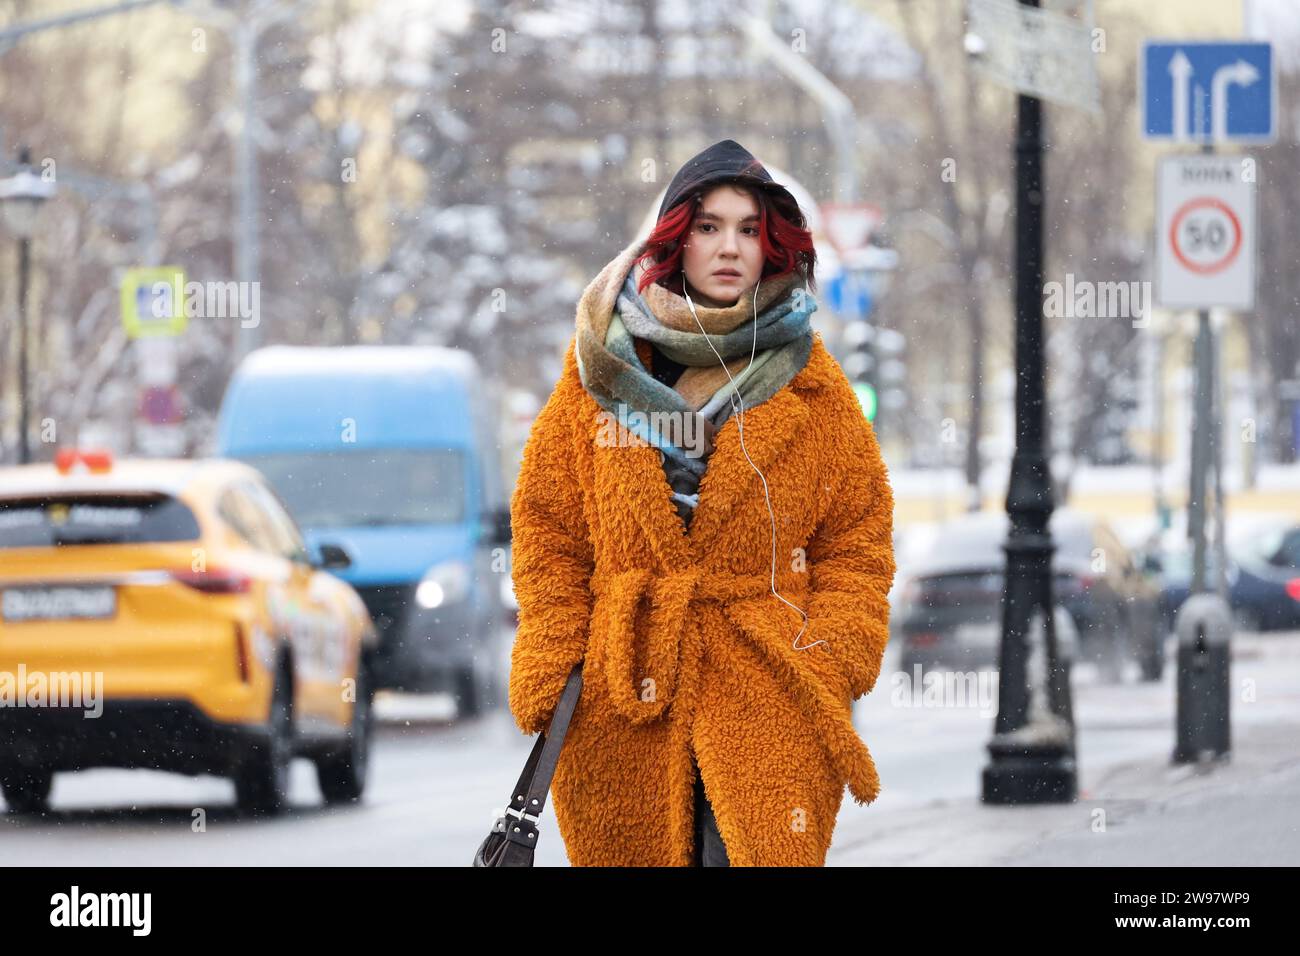 Junge Frau im orangefarbenen Mantel, die im Schnee auf der Straße läuft. Winter in einer Stadt, kaltes Wetter Stockfoto